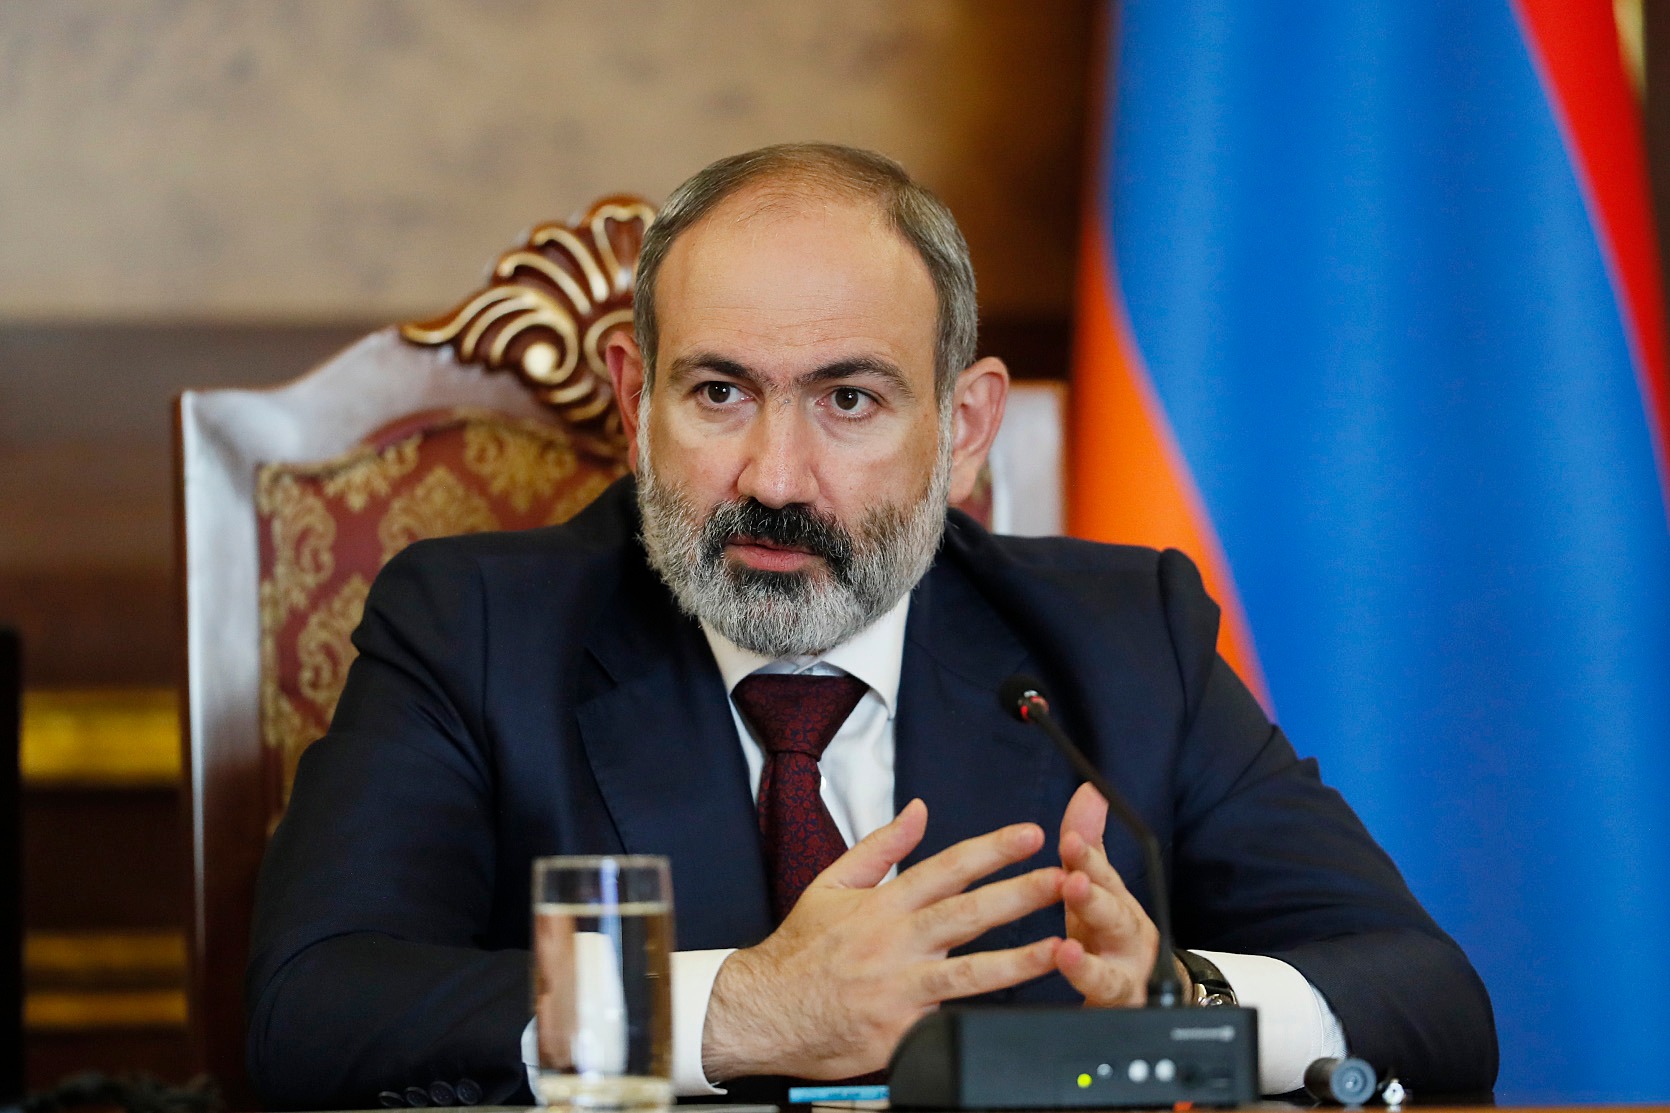 У Никола Пашиняна по-прежнему самый высокий рейтинг среди политиков Армении․ IRI